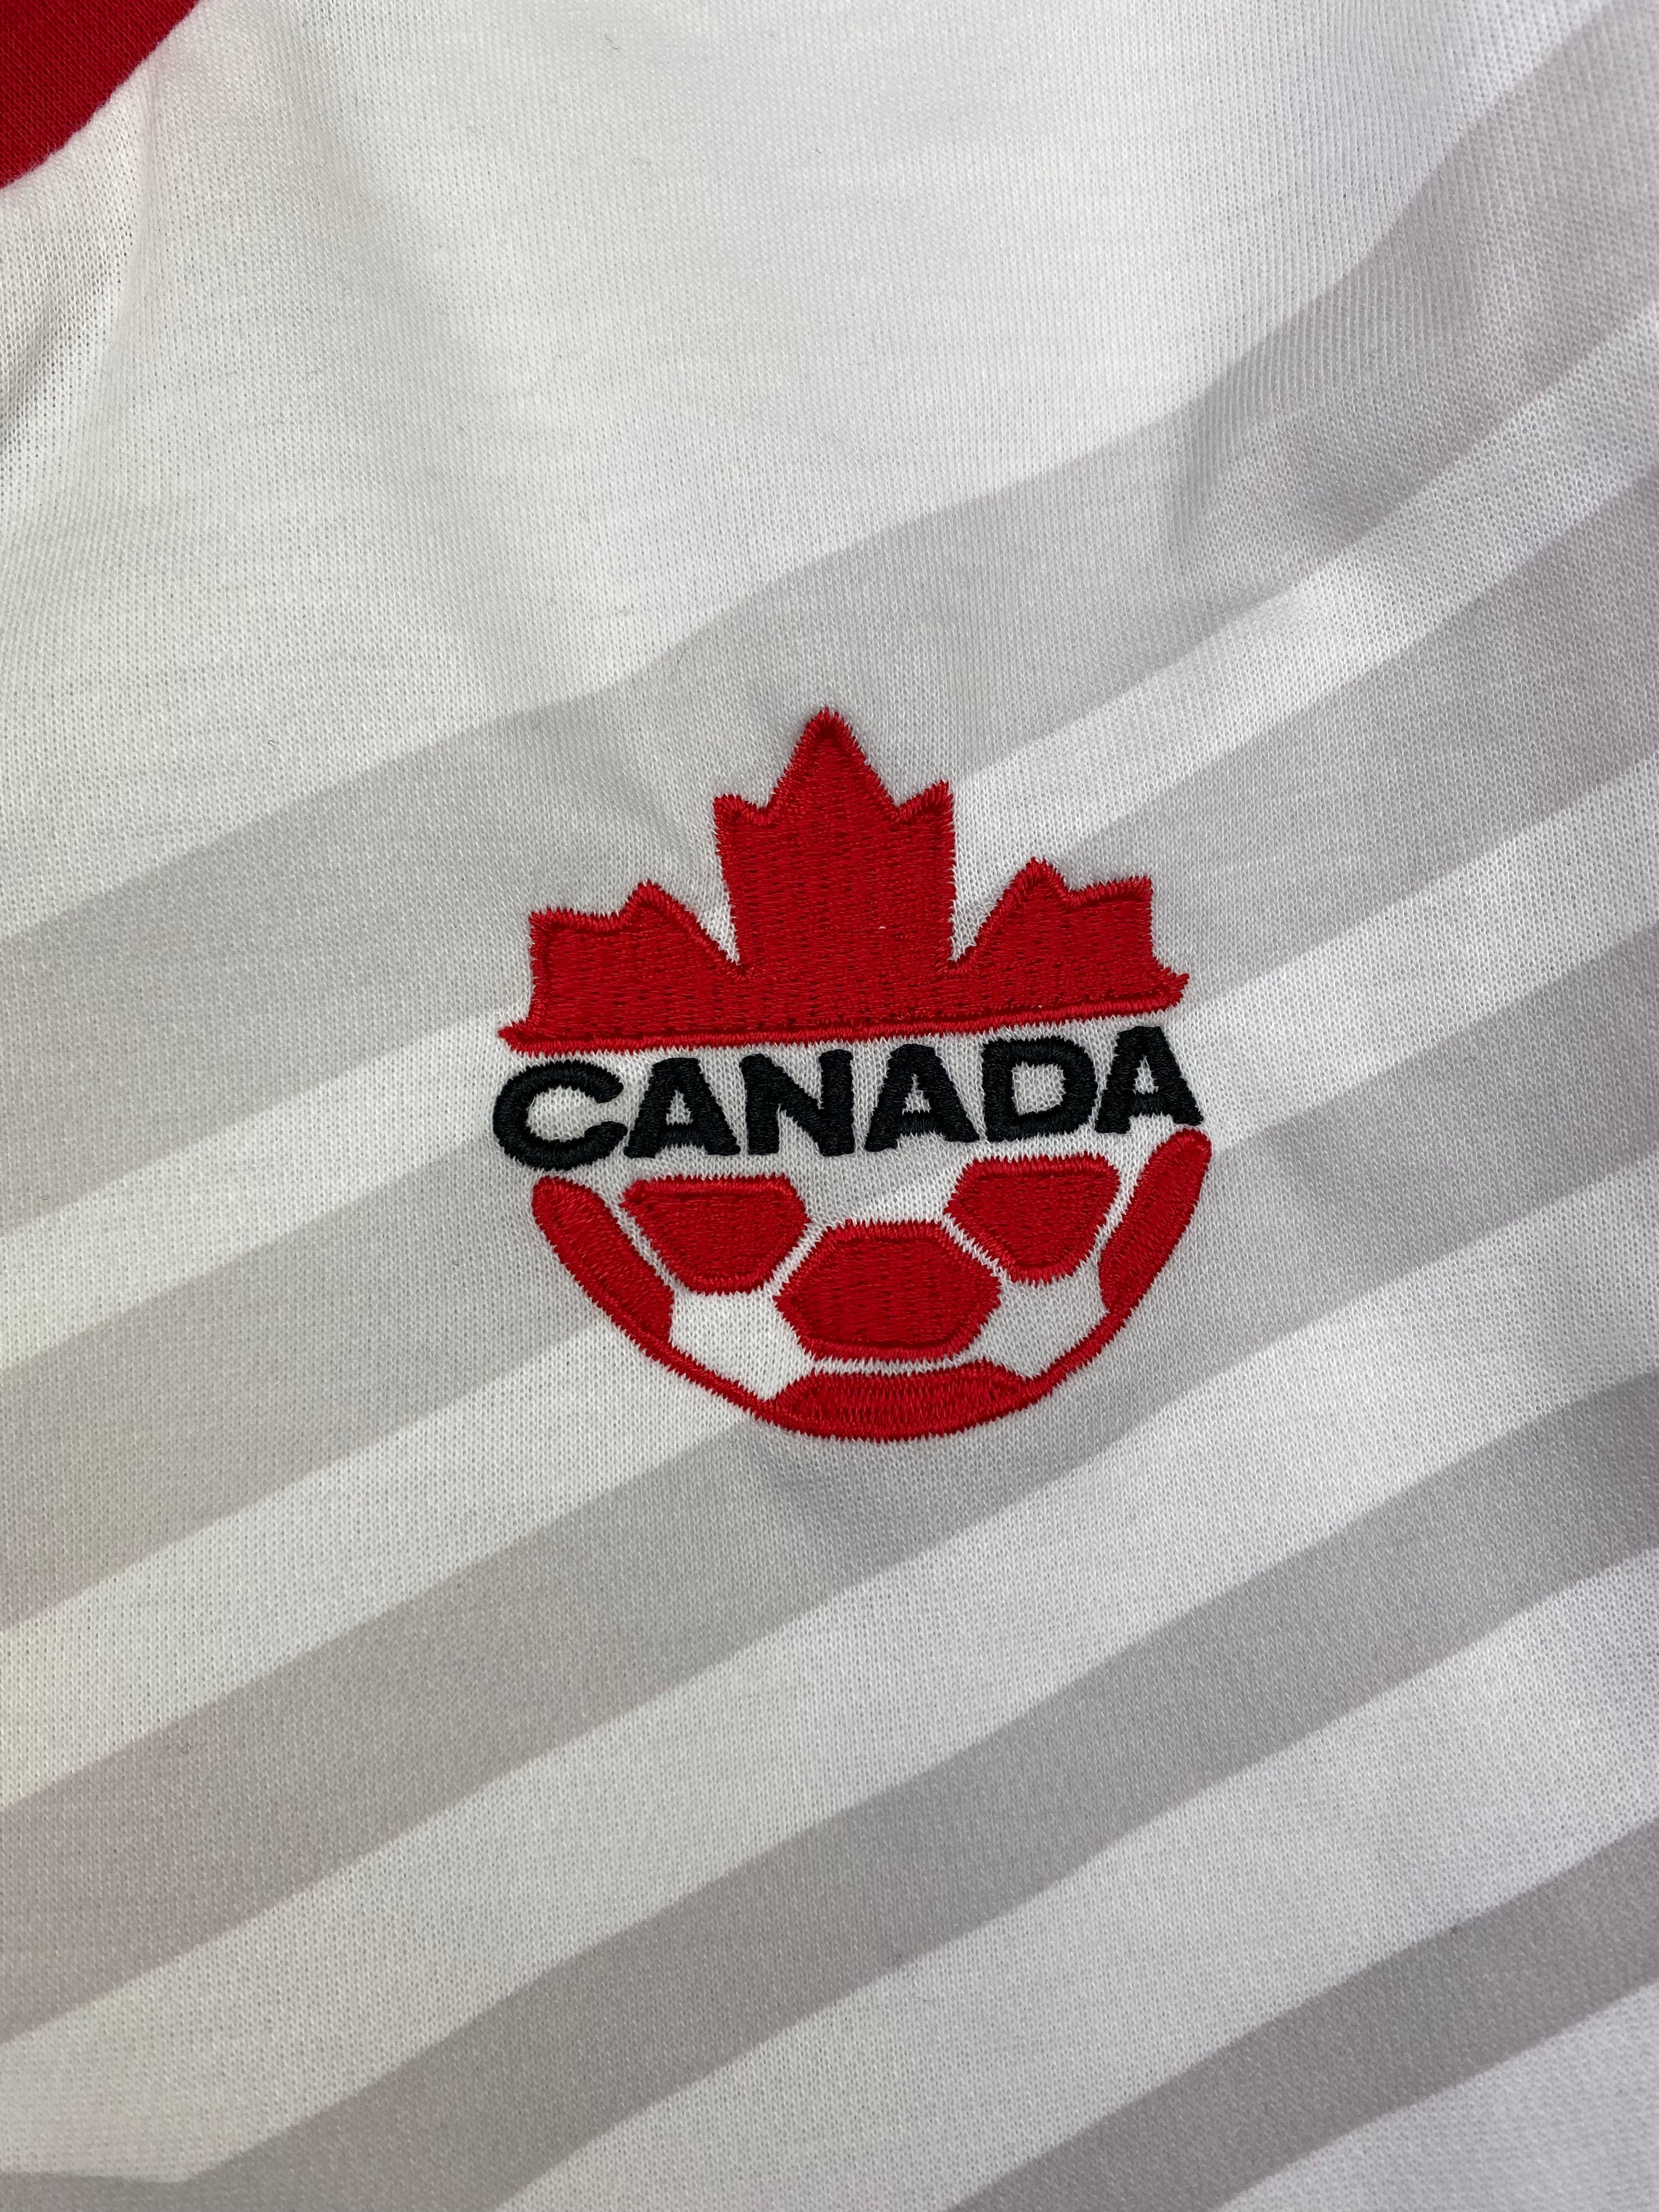 Camiseta de visitante de Canadá 2013 (S) 9/10